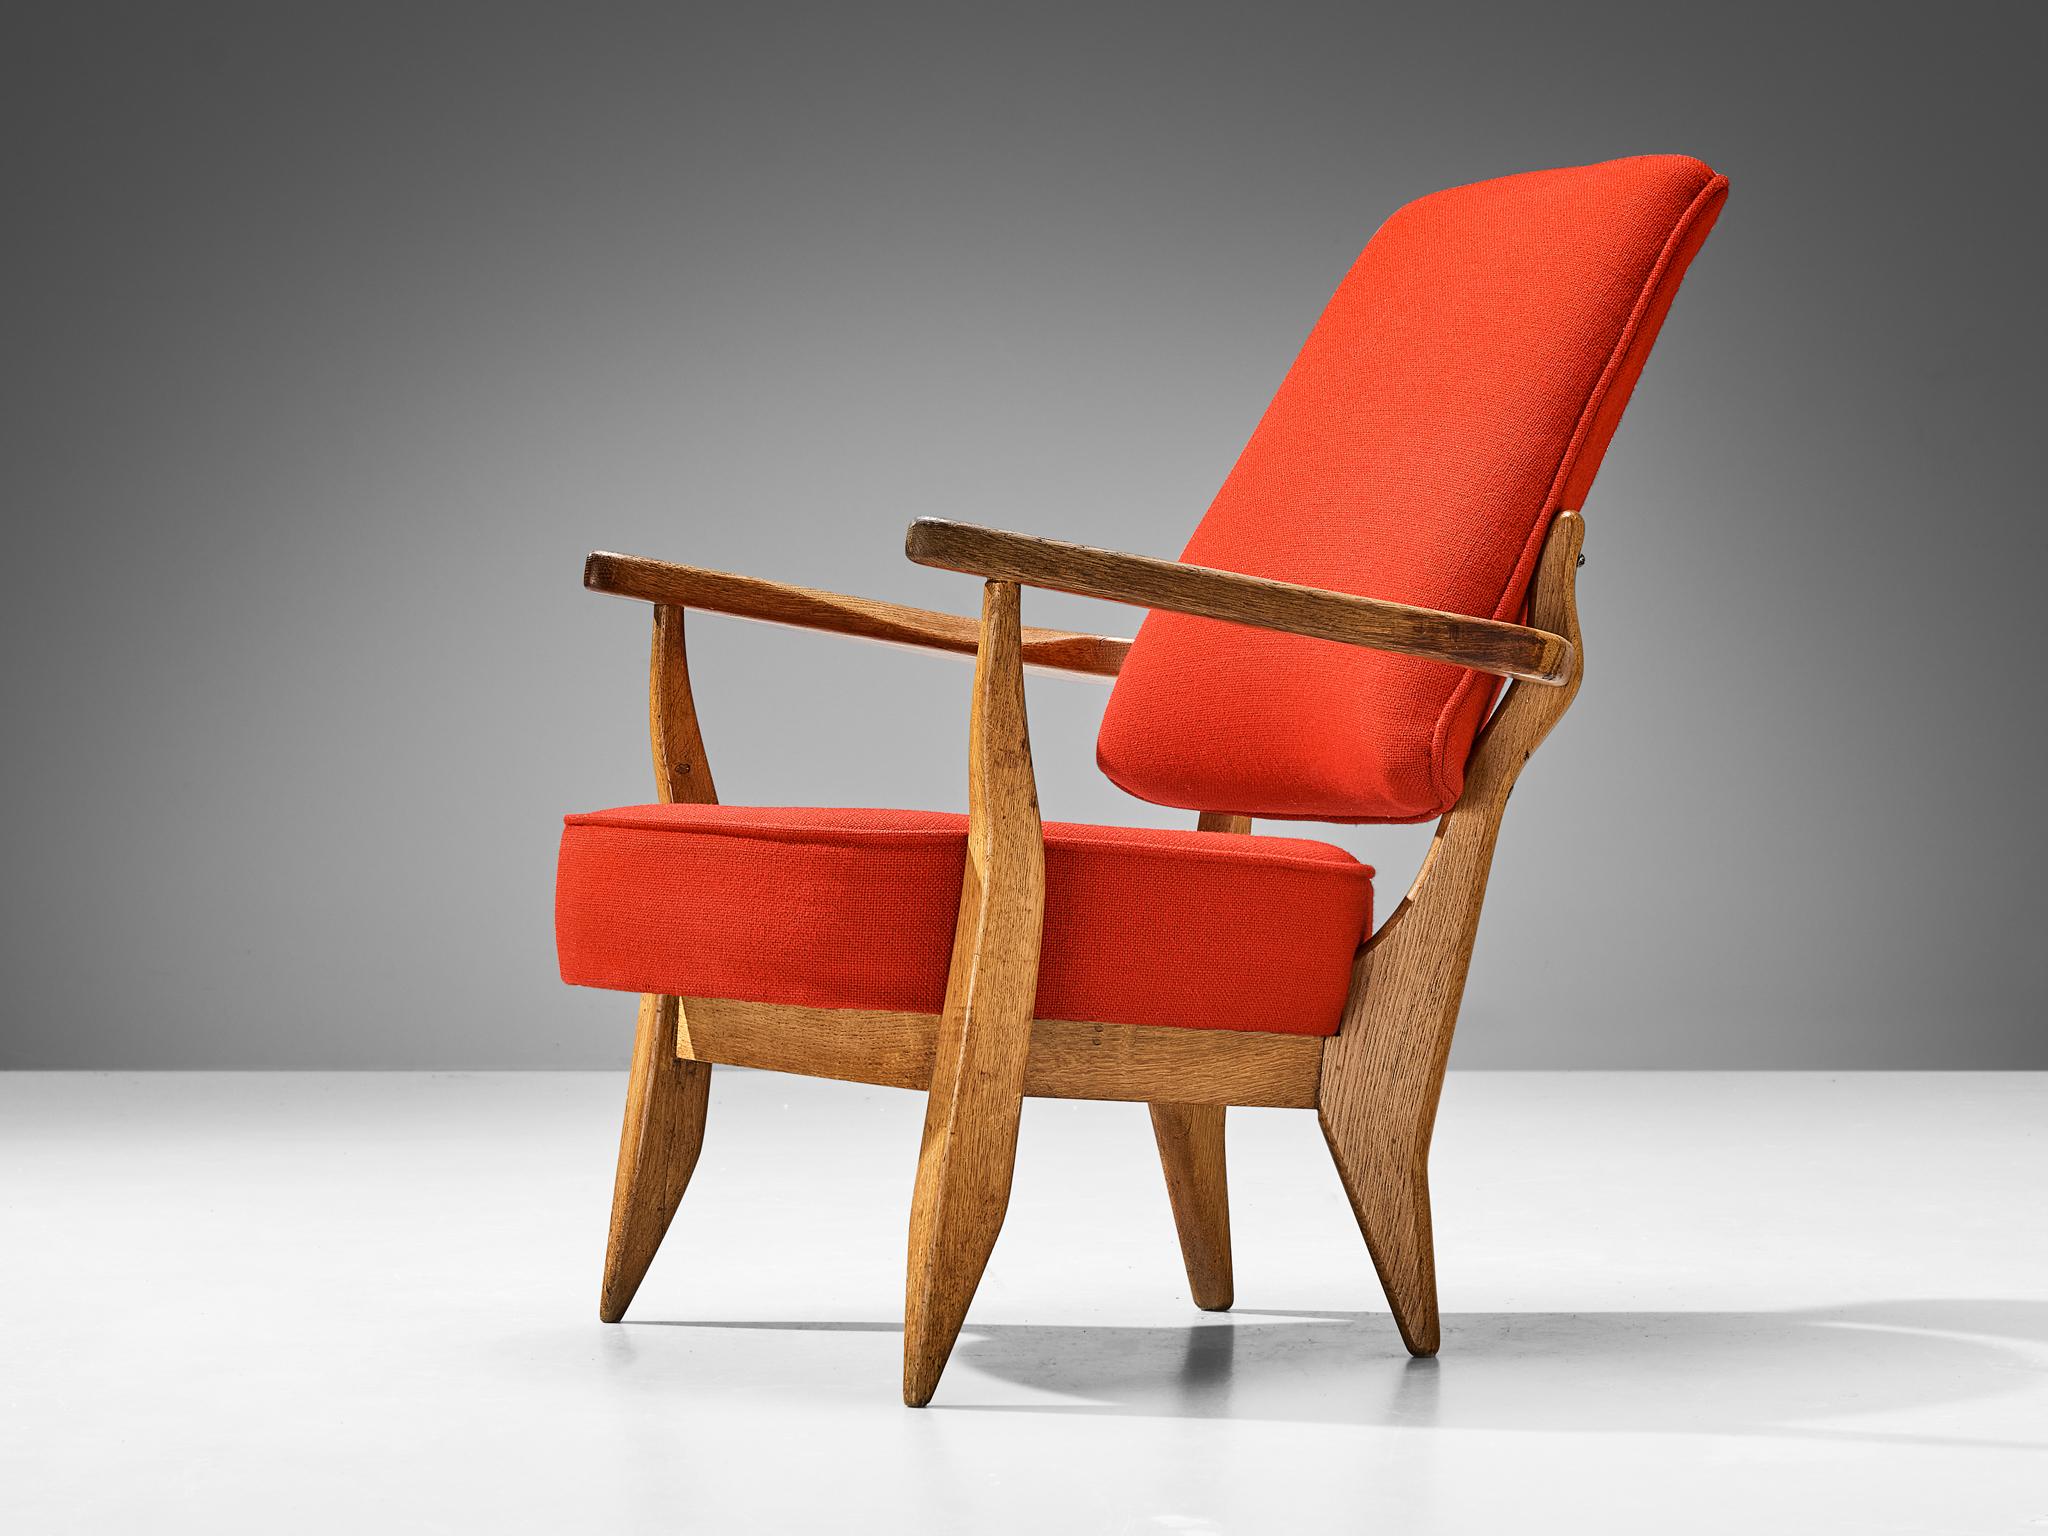 Guillerme et Chambron pour Votre Maison, fauteuil, tissu rouge, chêne, France, années 1960 

Ce fauteuil sculptural de Guillerme et Chambron est très bien exécuté et fabriqué en chêne massif sculpté. Ce fauteuil très confortable se caractérise par